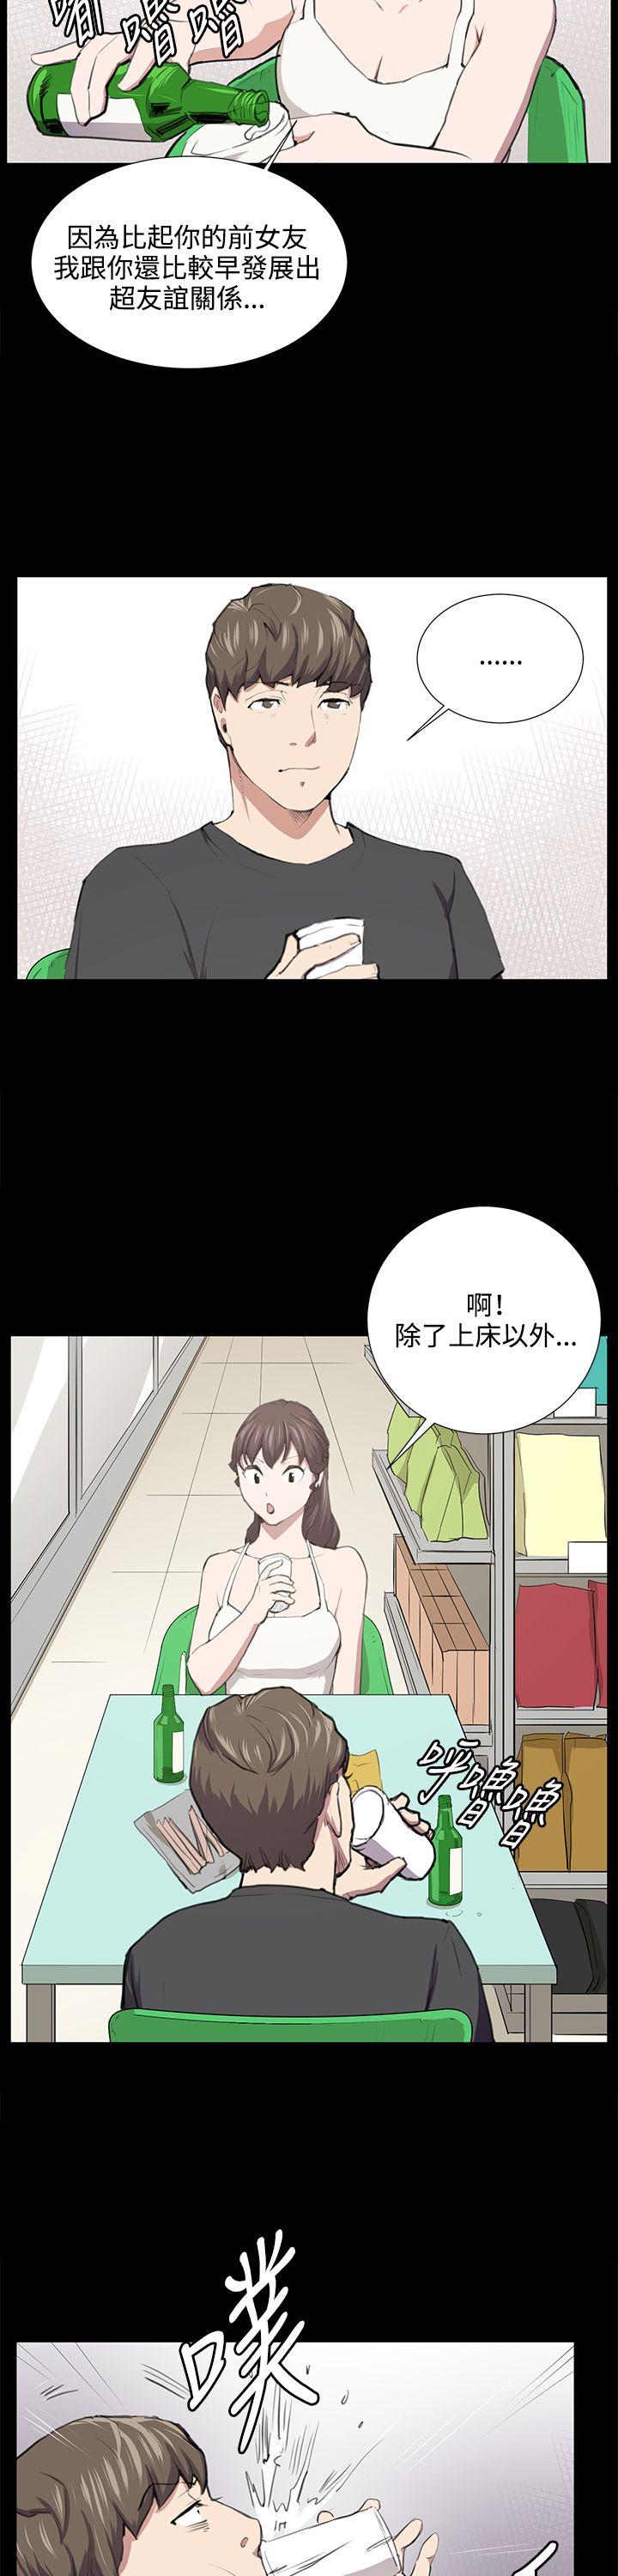 韩国污漫画 深夜便利店 第52话 18